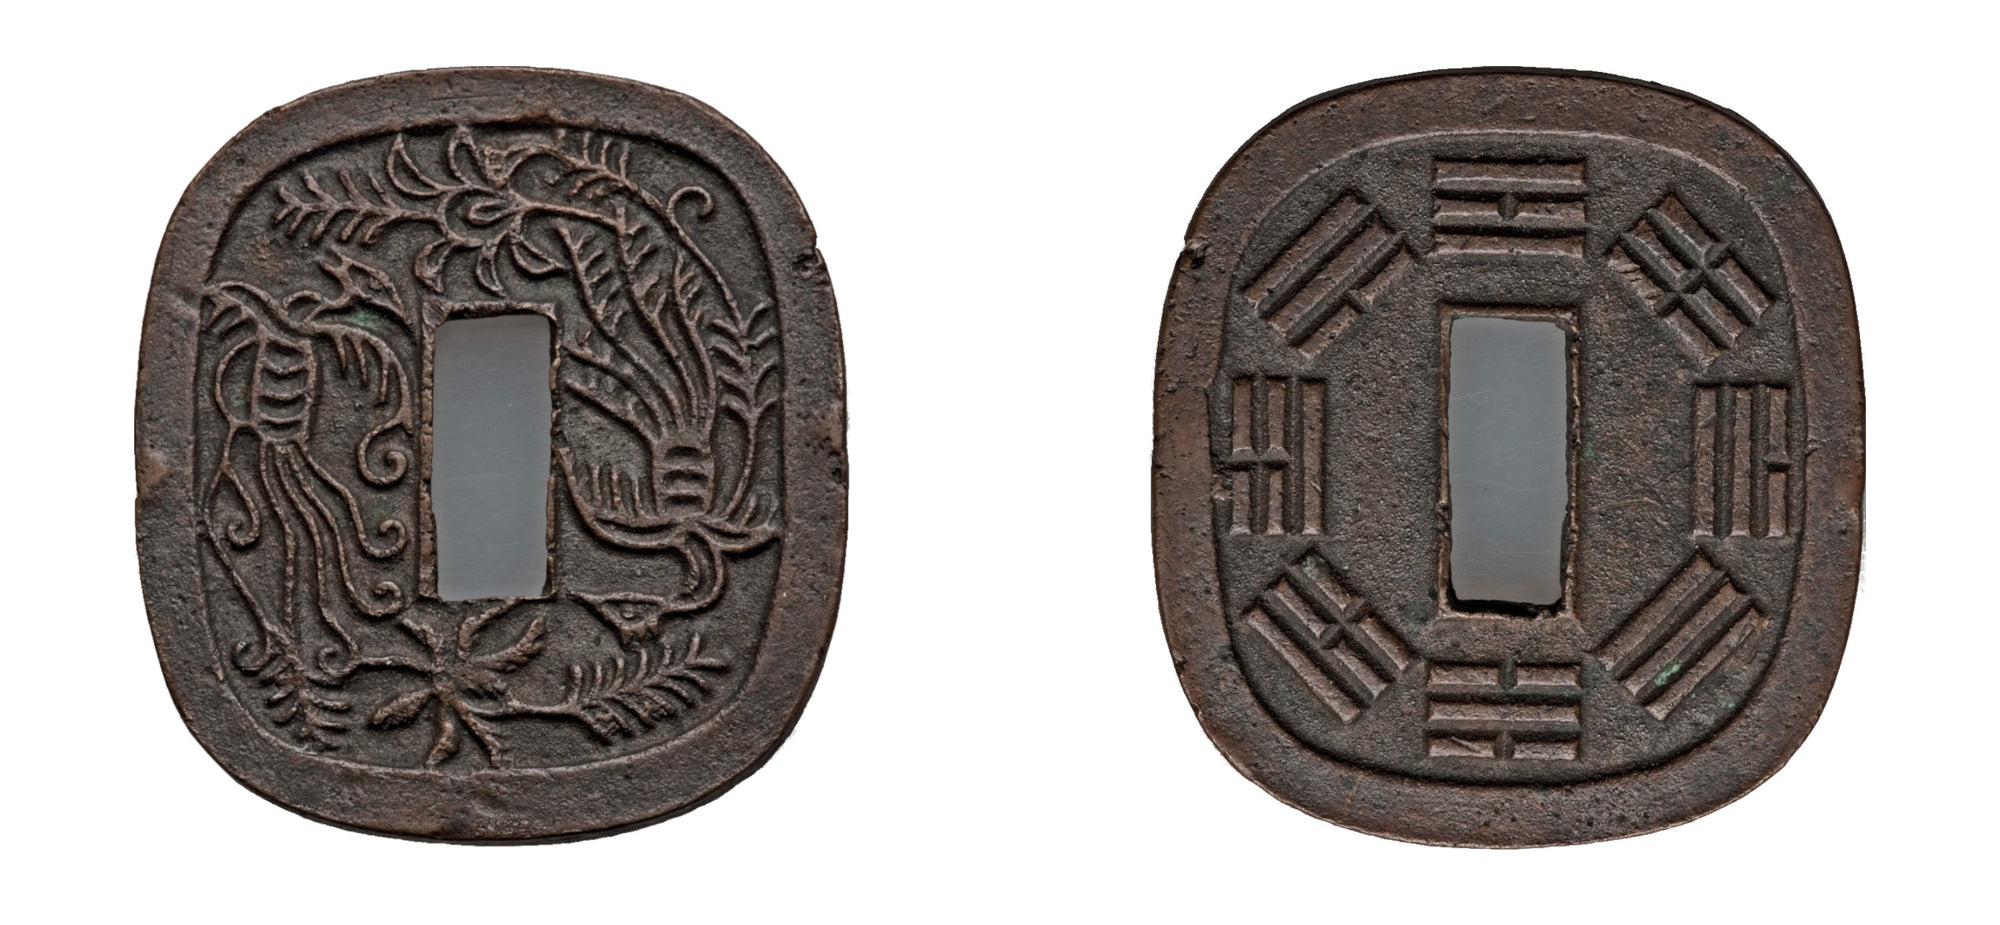 1861 Akita Province copper 100 Mon UNC - Hard Asset Management, Inc